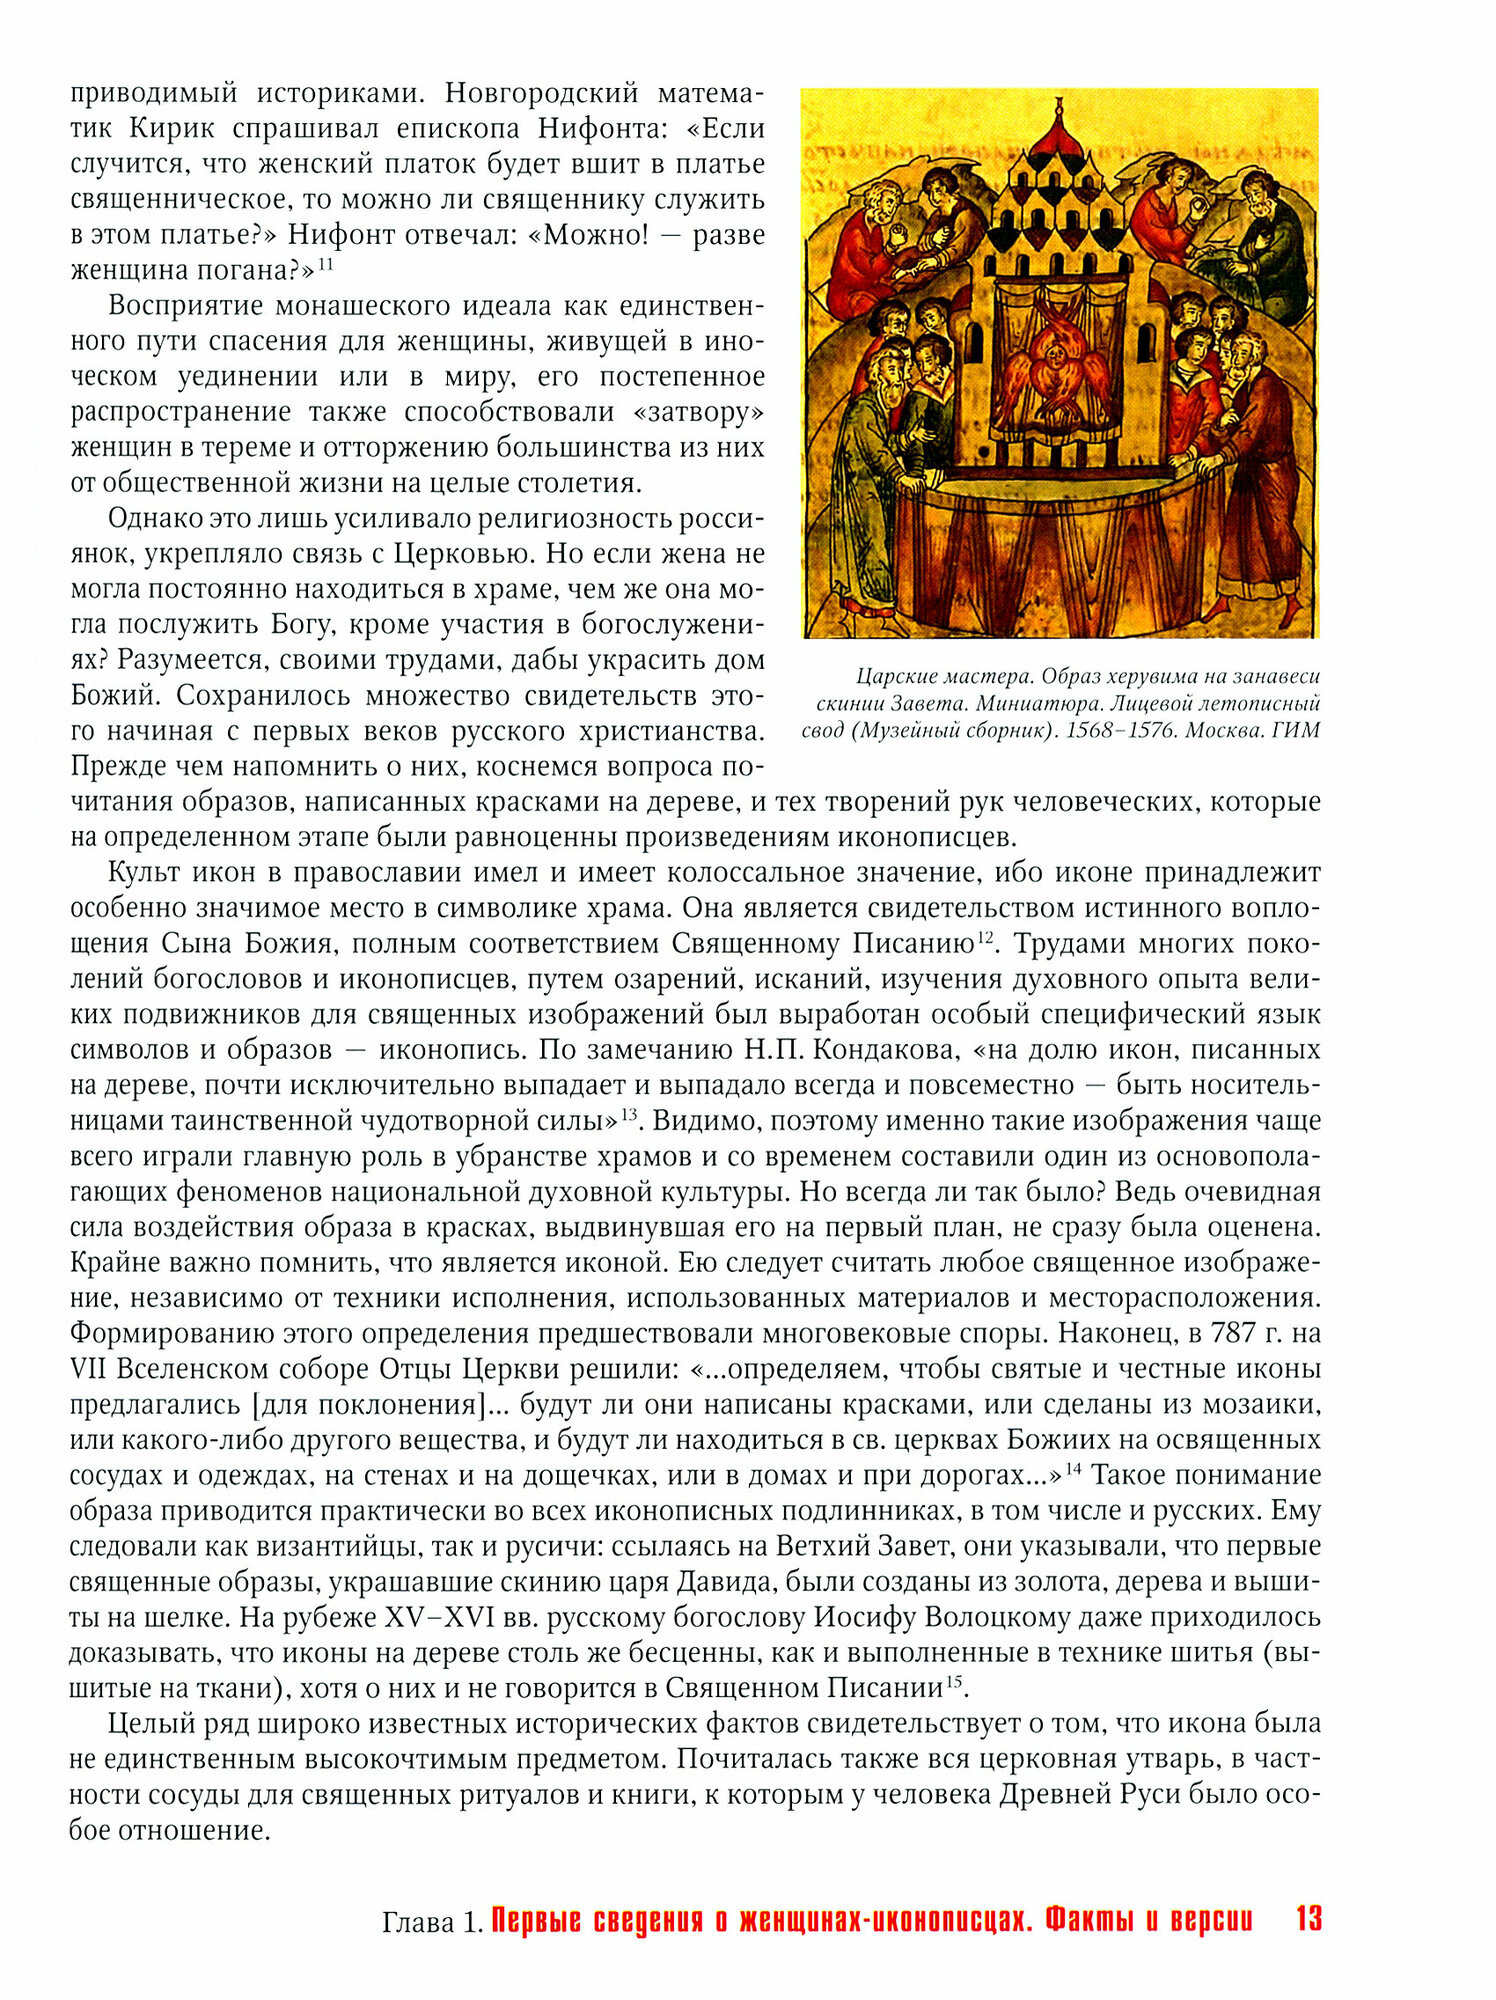 Женщины-иконописцы. Россия в Средние века и Новое время - фото №3